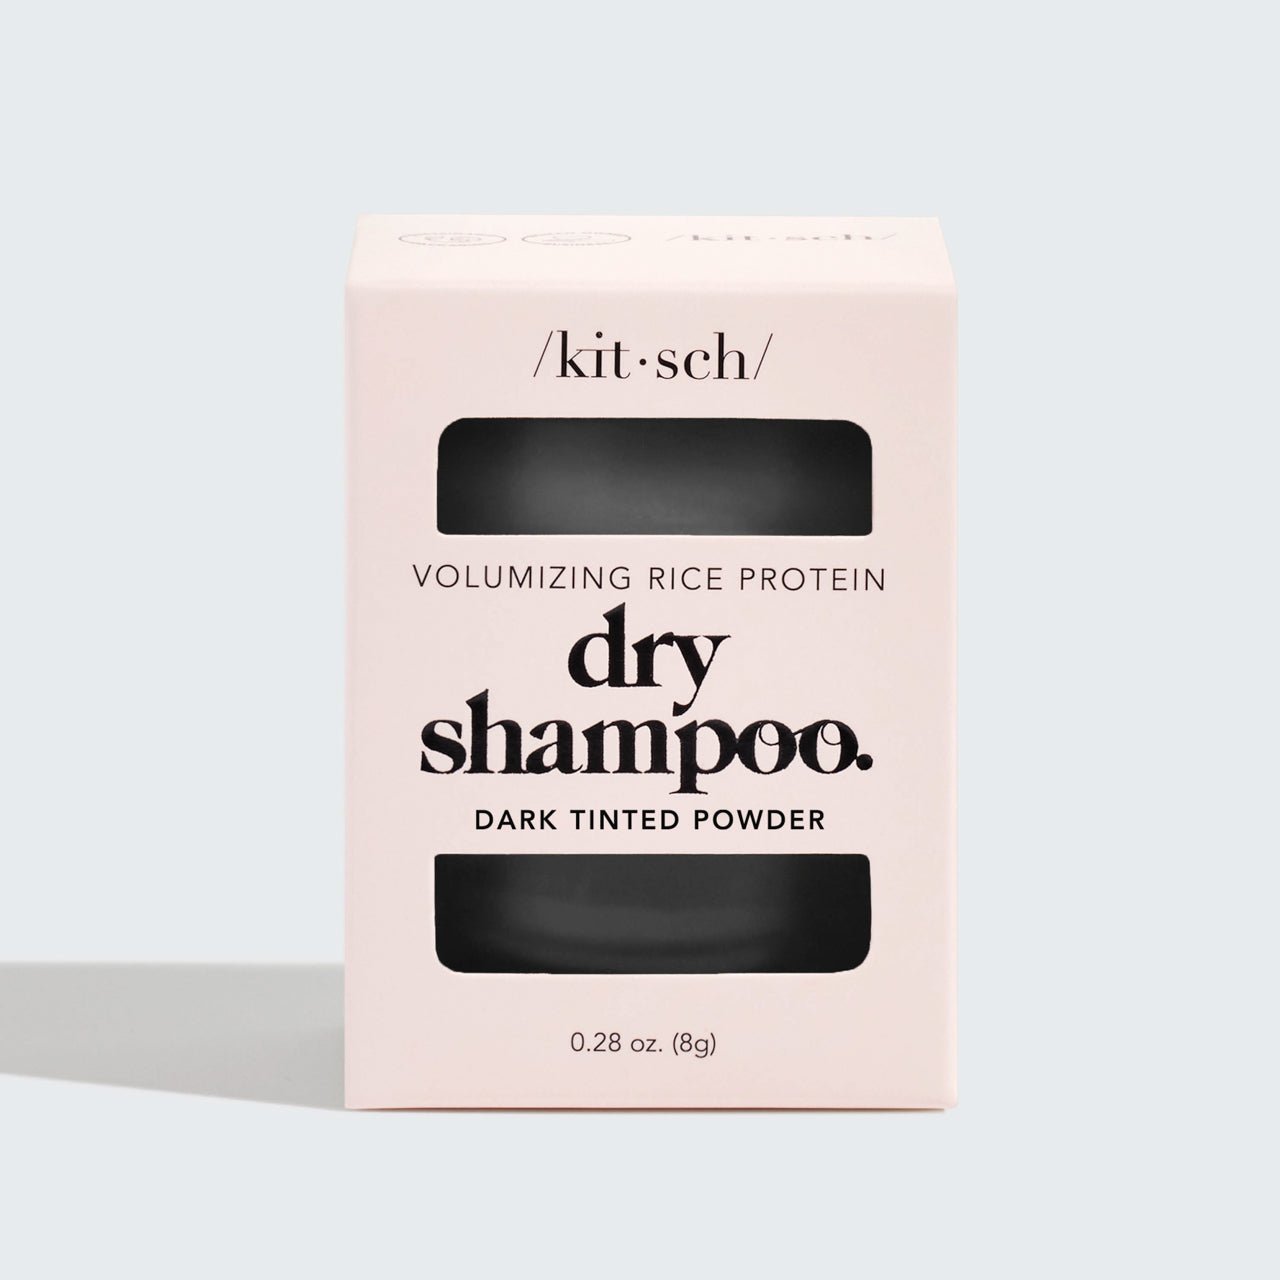 Shampoo secco volumizzante alle proteine del riso - Polvere colorata scura